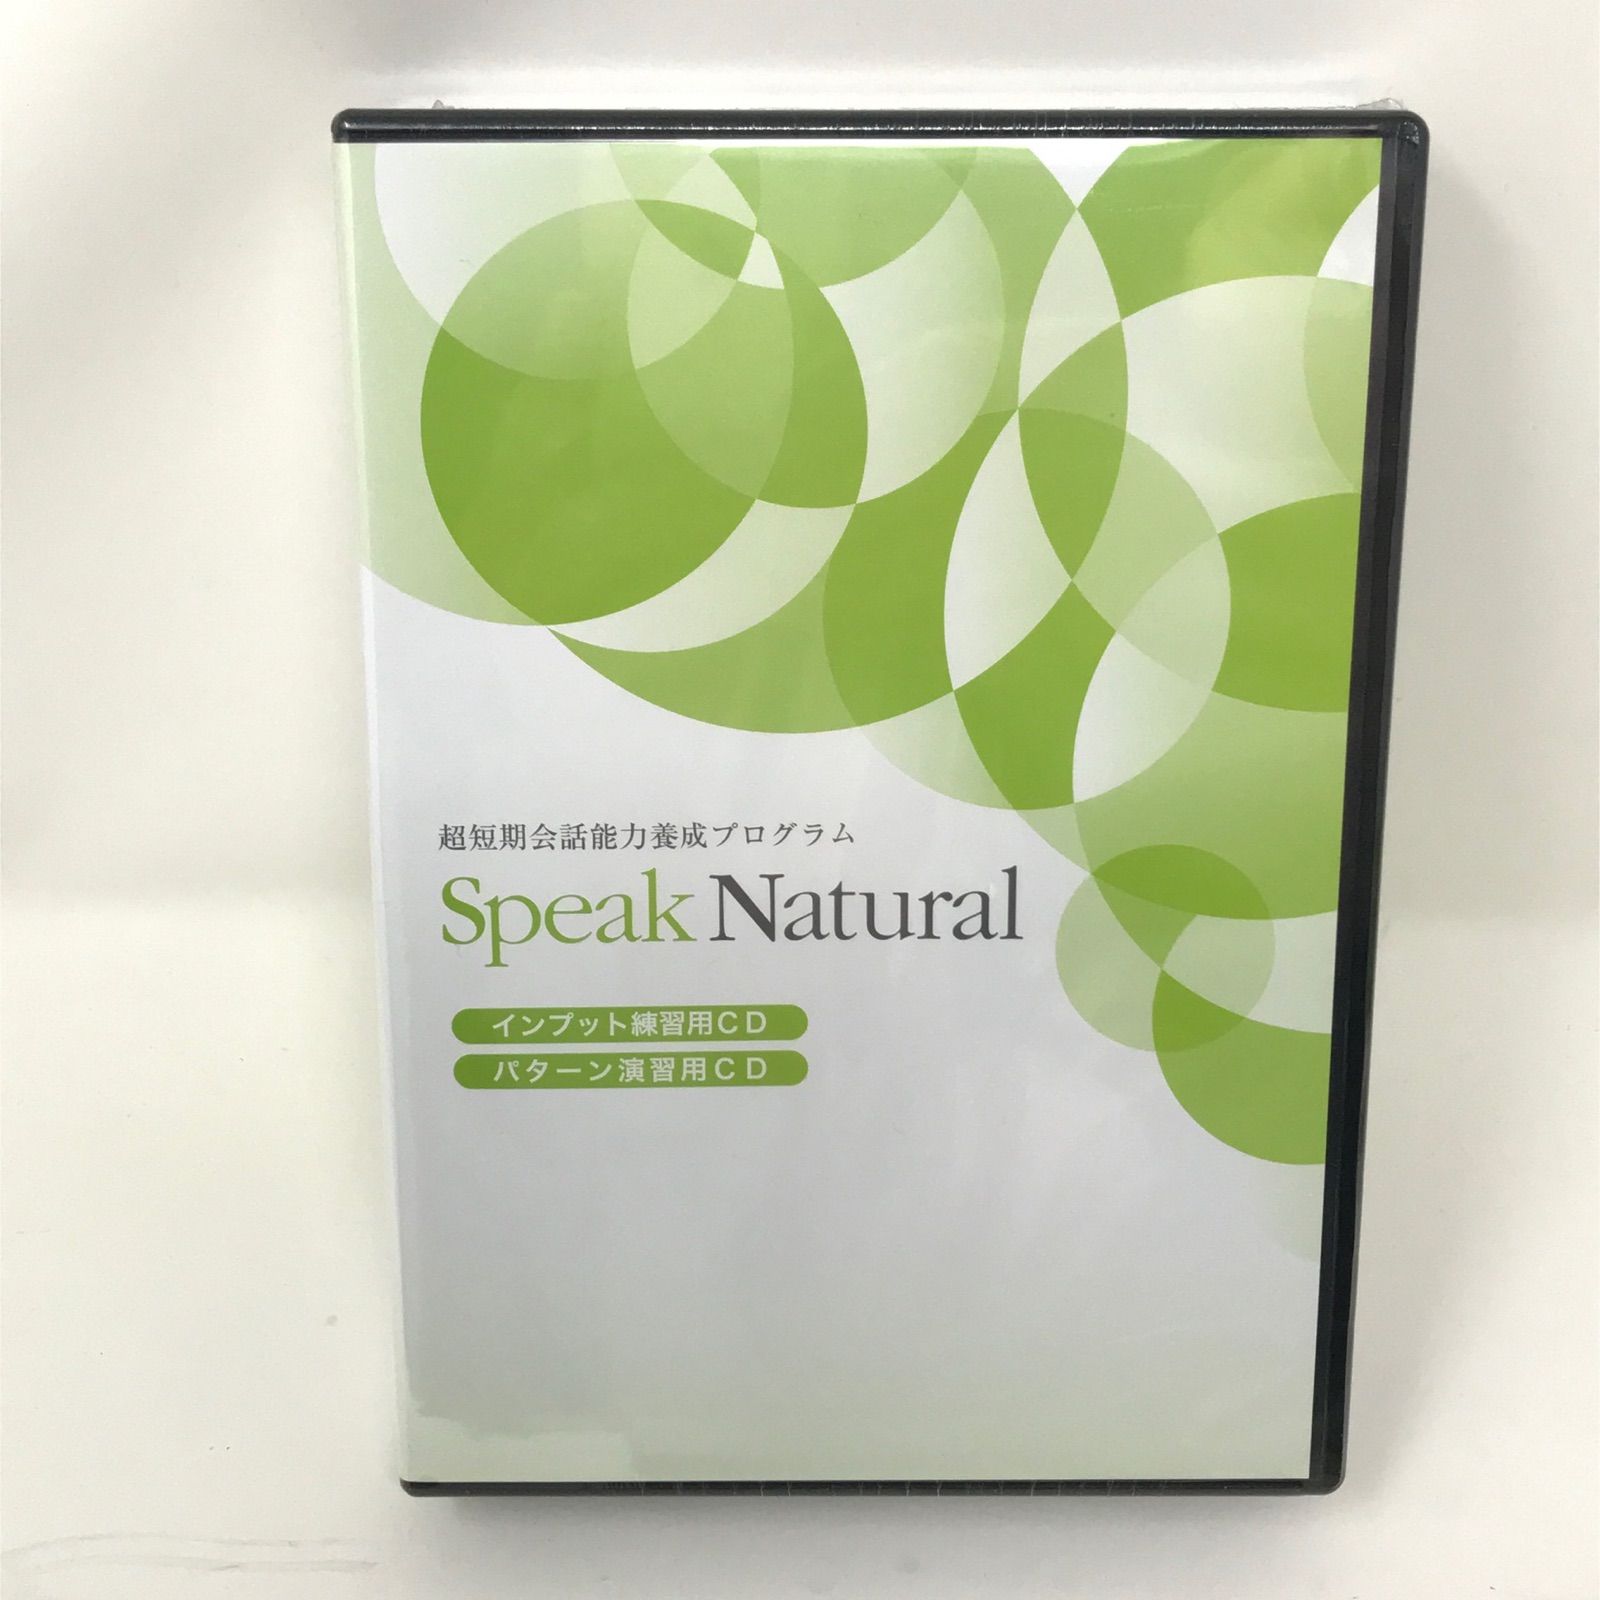 英会話教材 Speak Natural スピークナチュラル テキスト CDセット